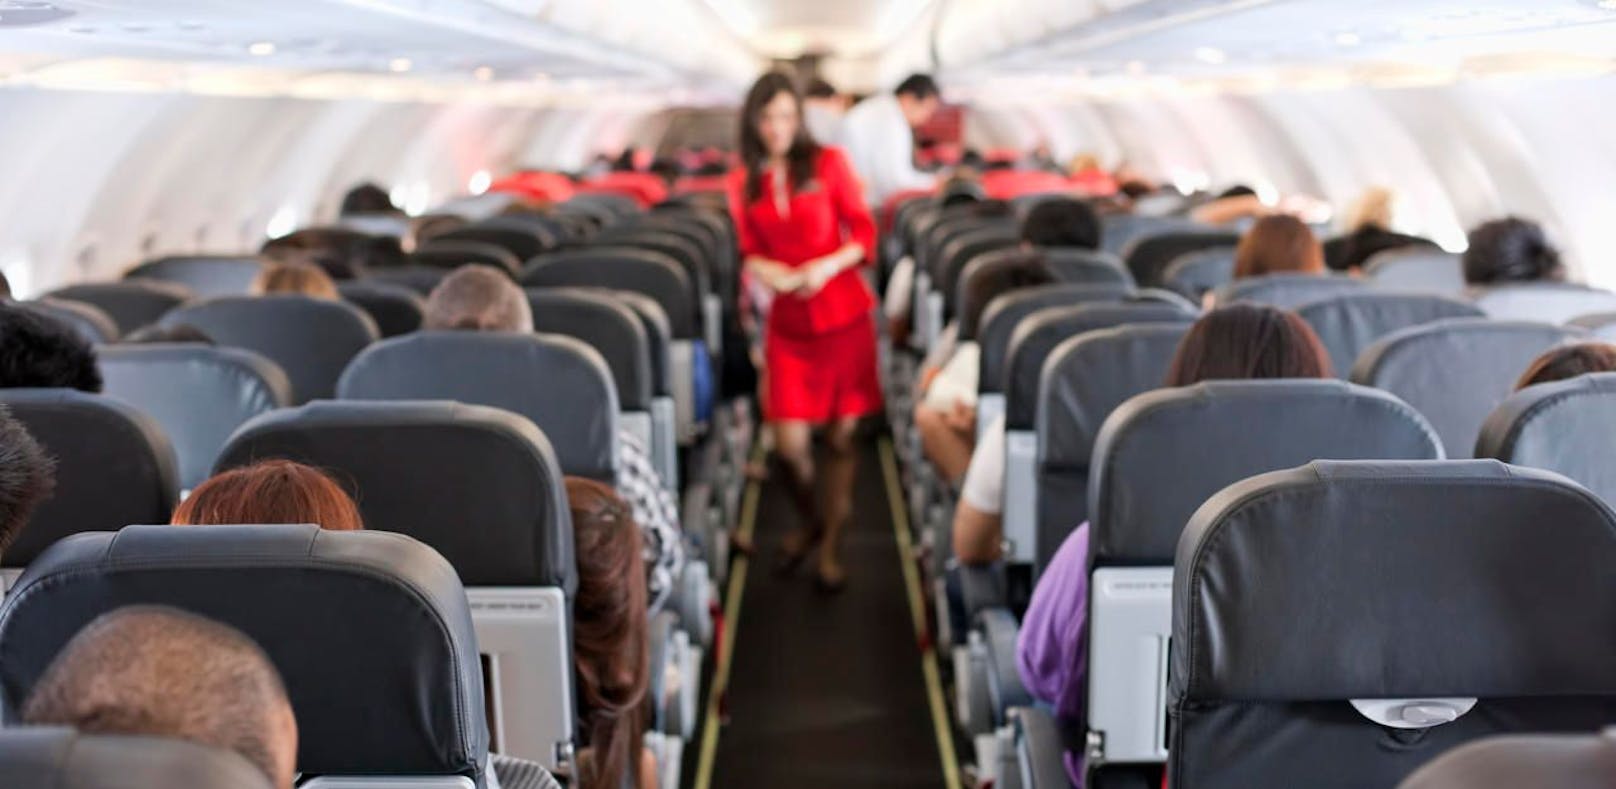 Die Mehrheit der Stewardessen wurde bereits einmal sexuell belästigt. (Symbolbild)